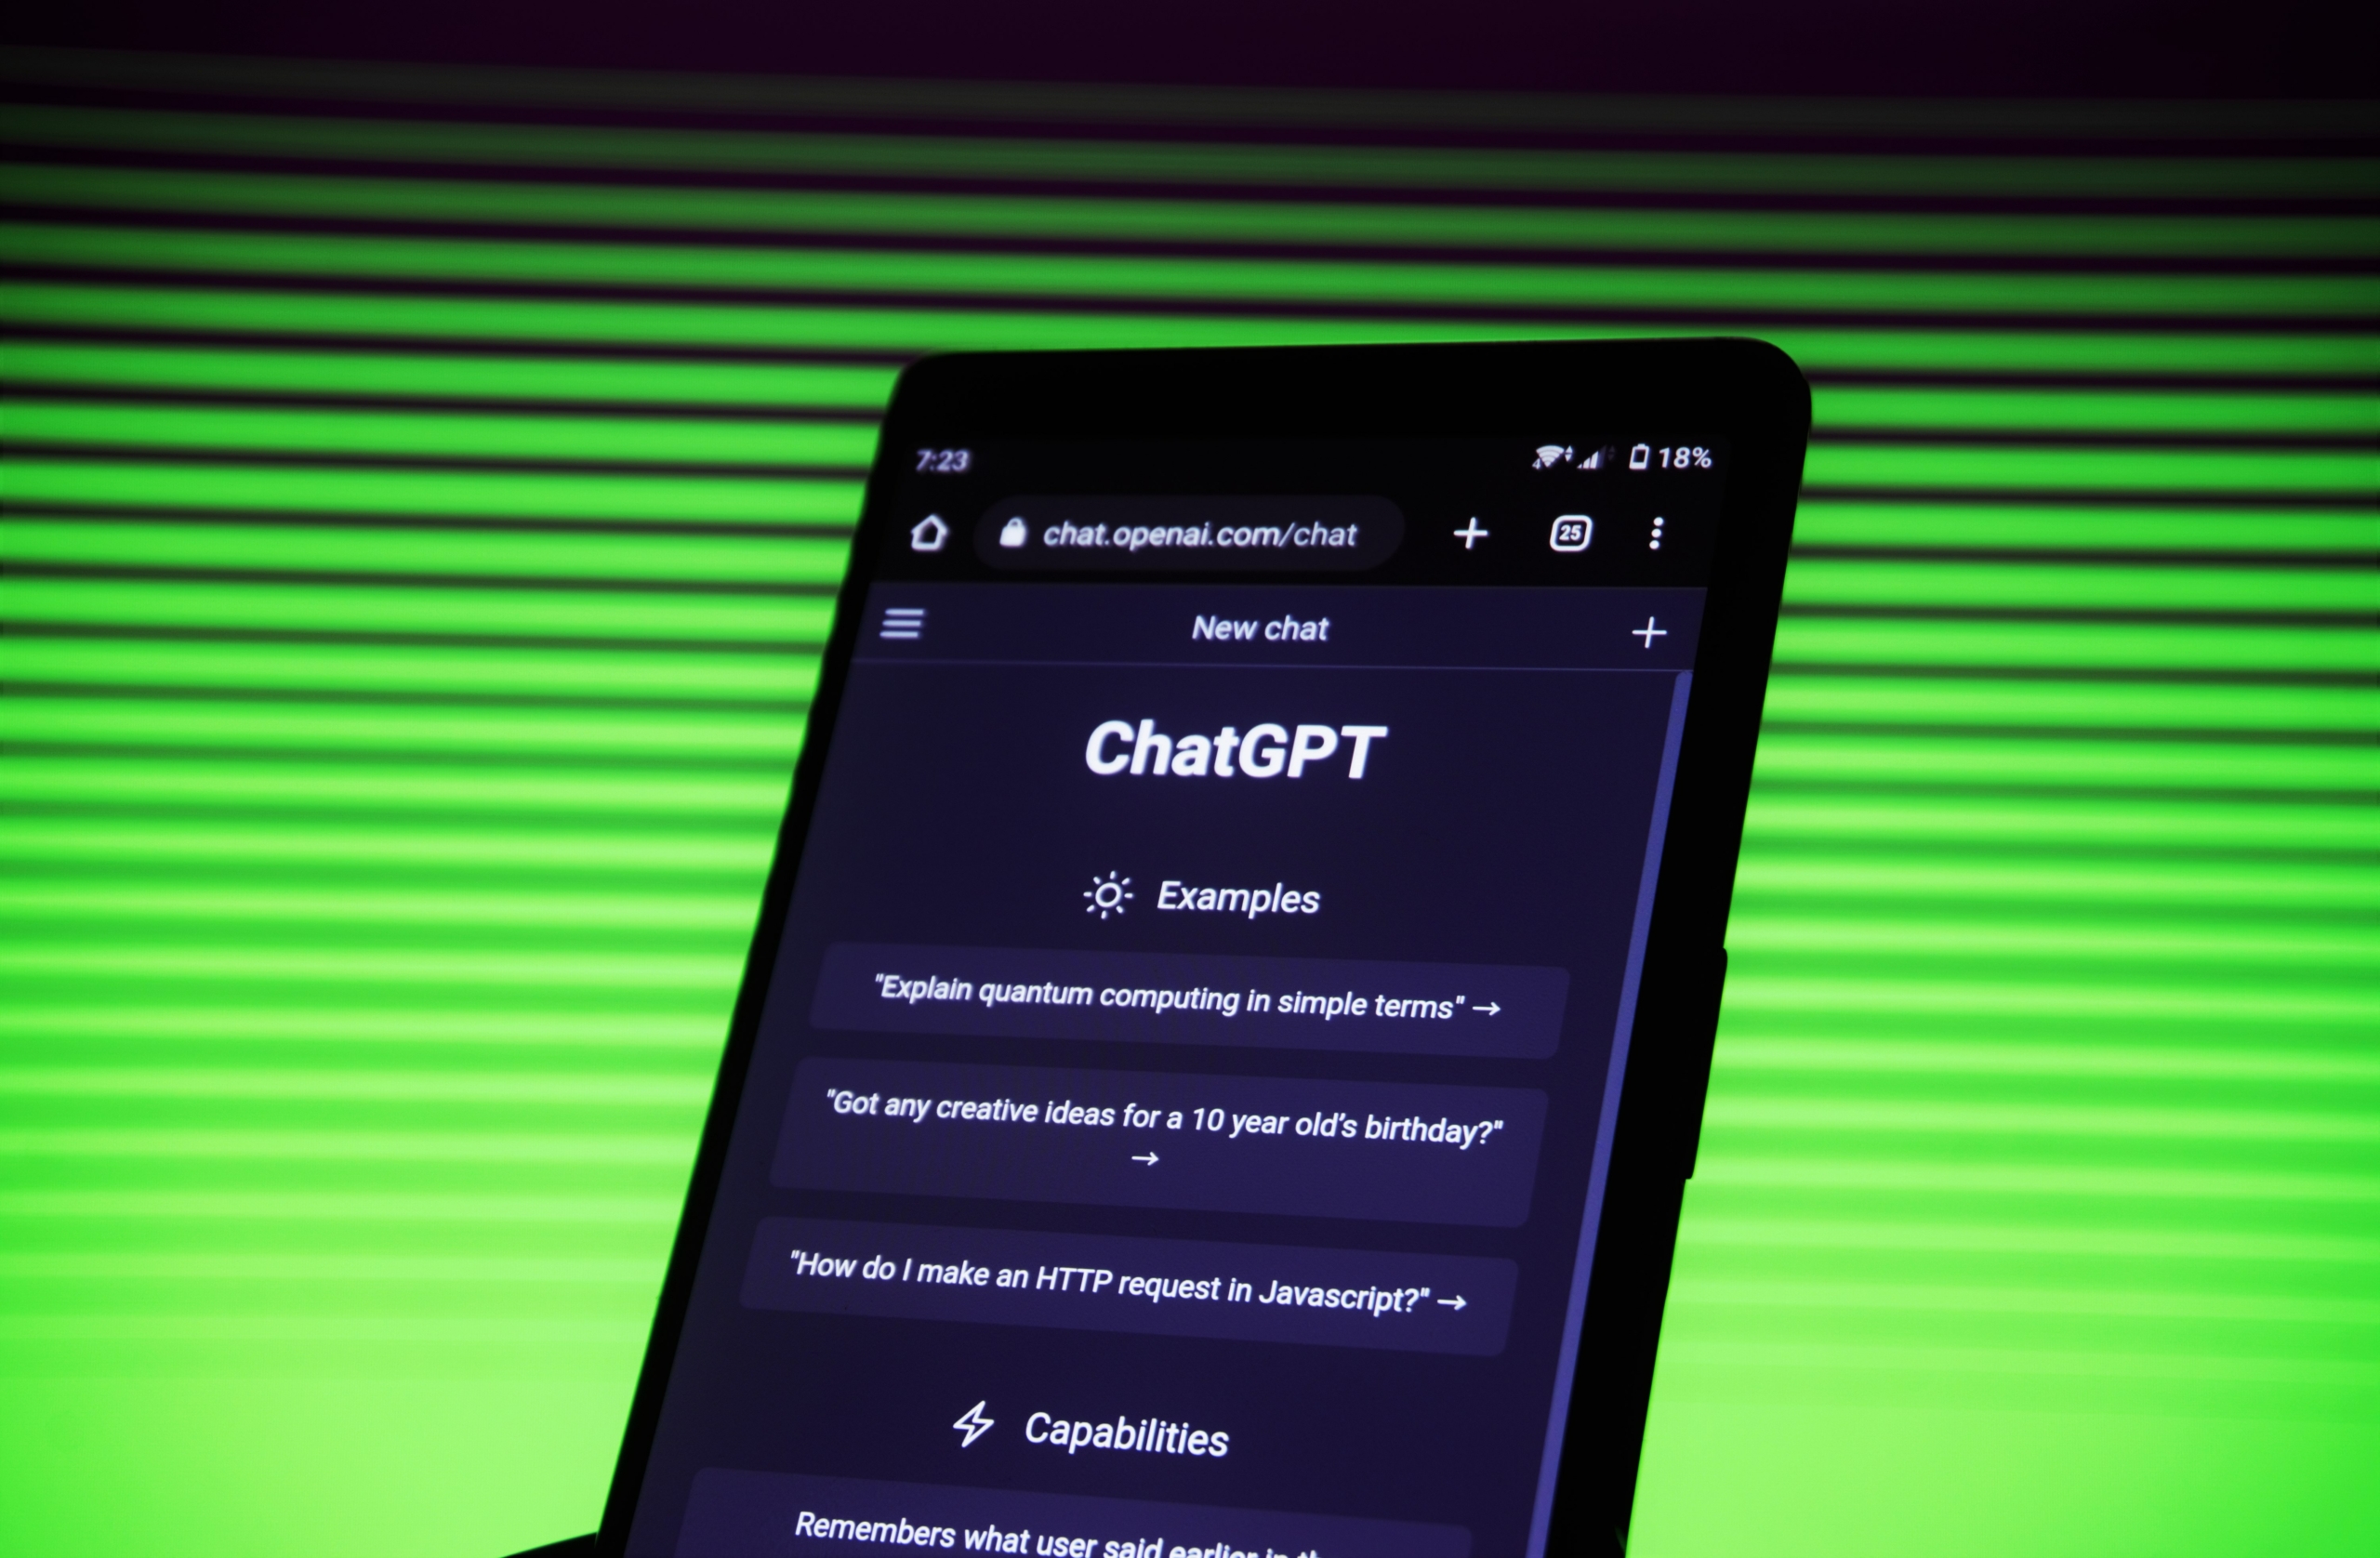 Post precedente: ChatGpt torna disponibile in Italia